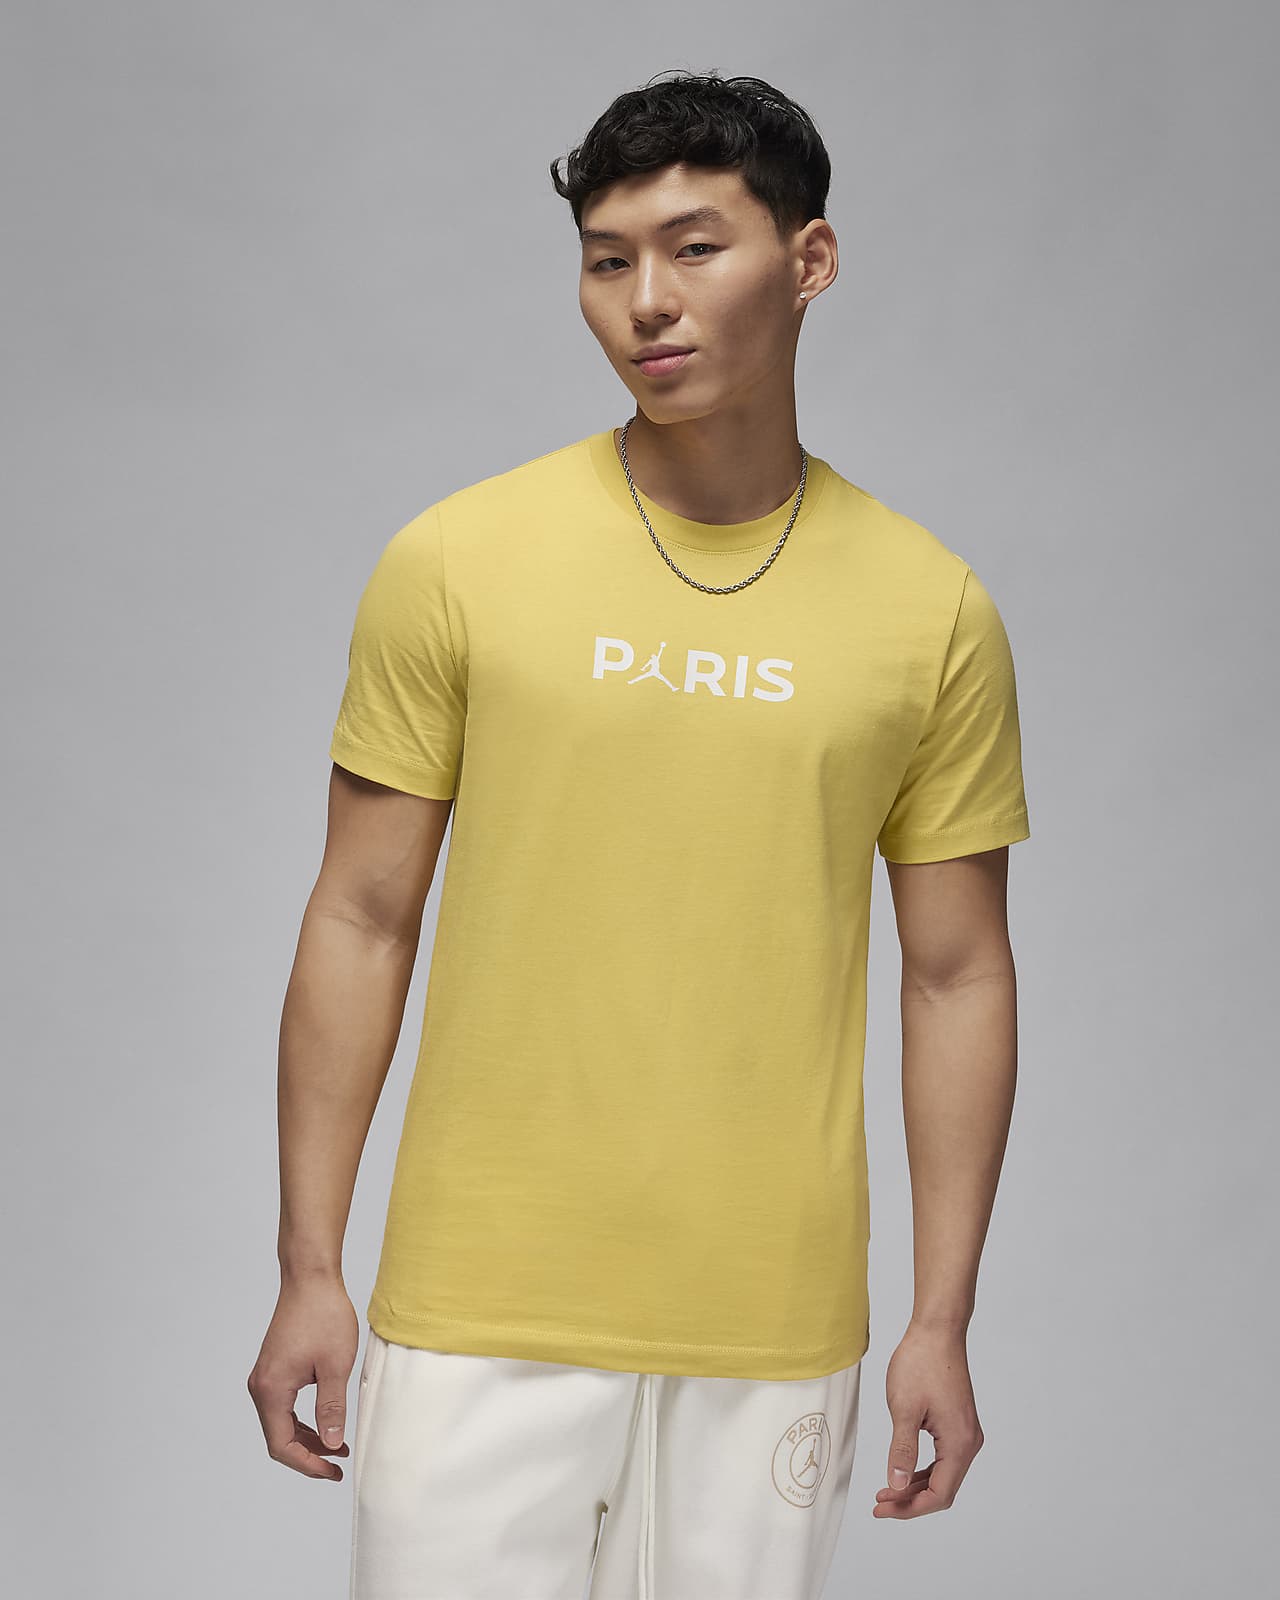 パリ サンジェルマン (PSG) メンズ Tシャツ